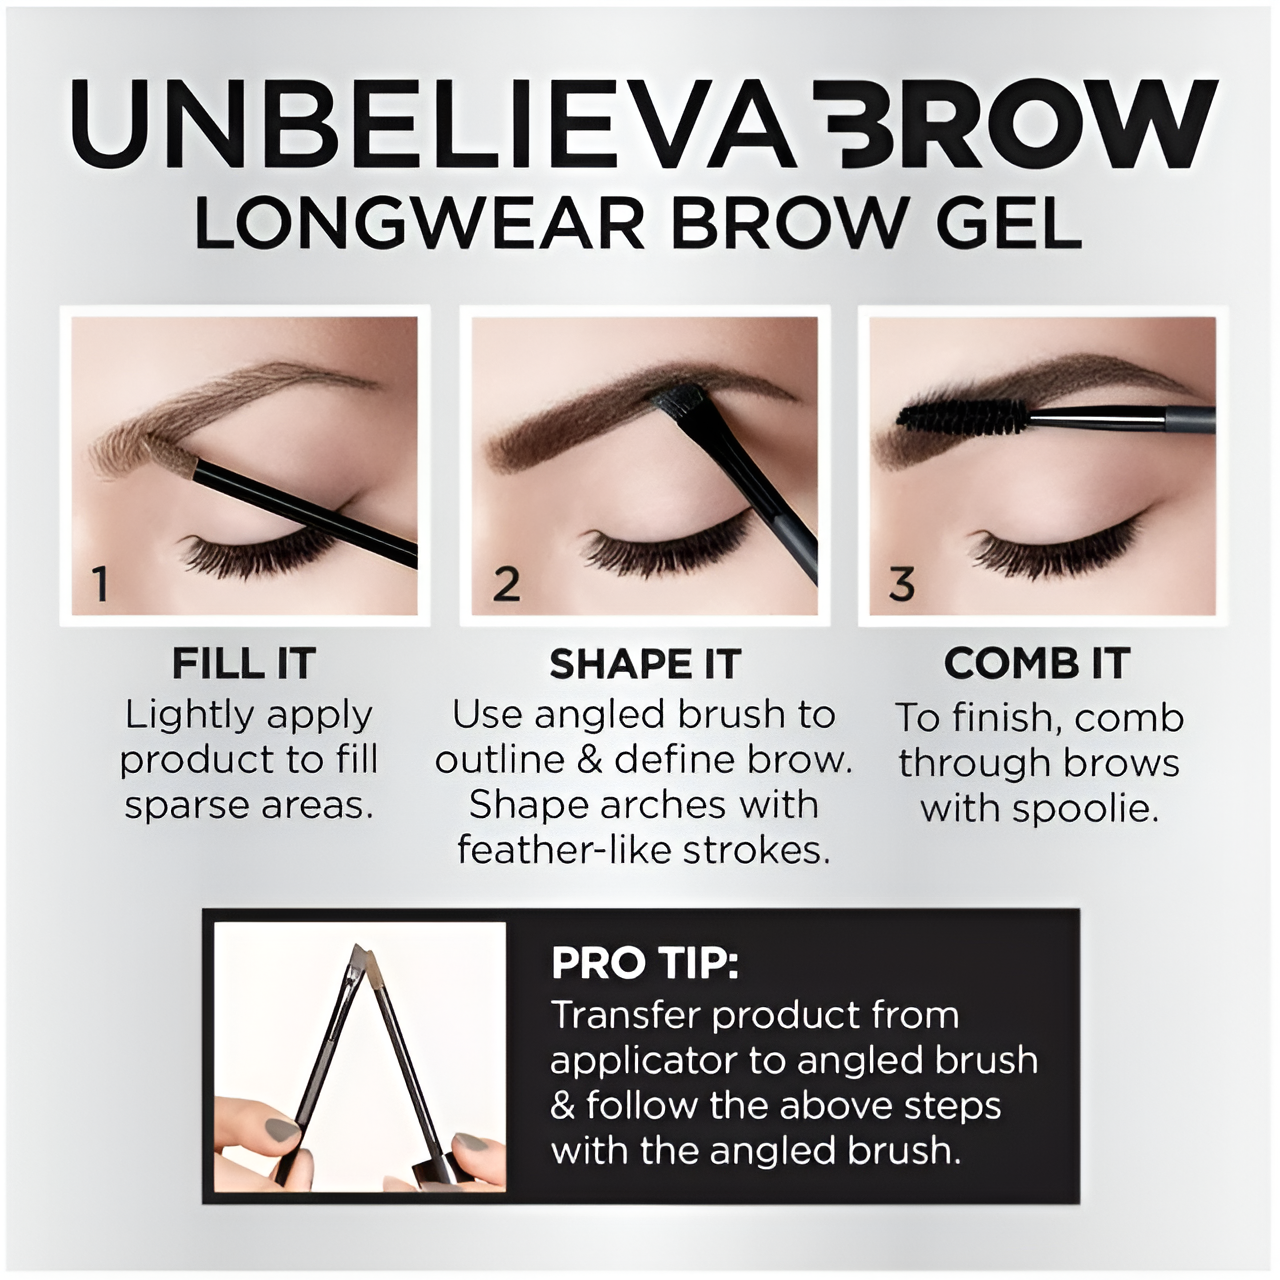 L'Oreal Paris Unbelieva-Brow Longwear Gel para cejas tintado resistente al agua, negro